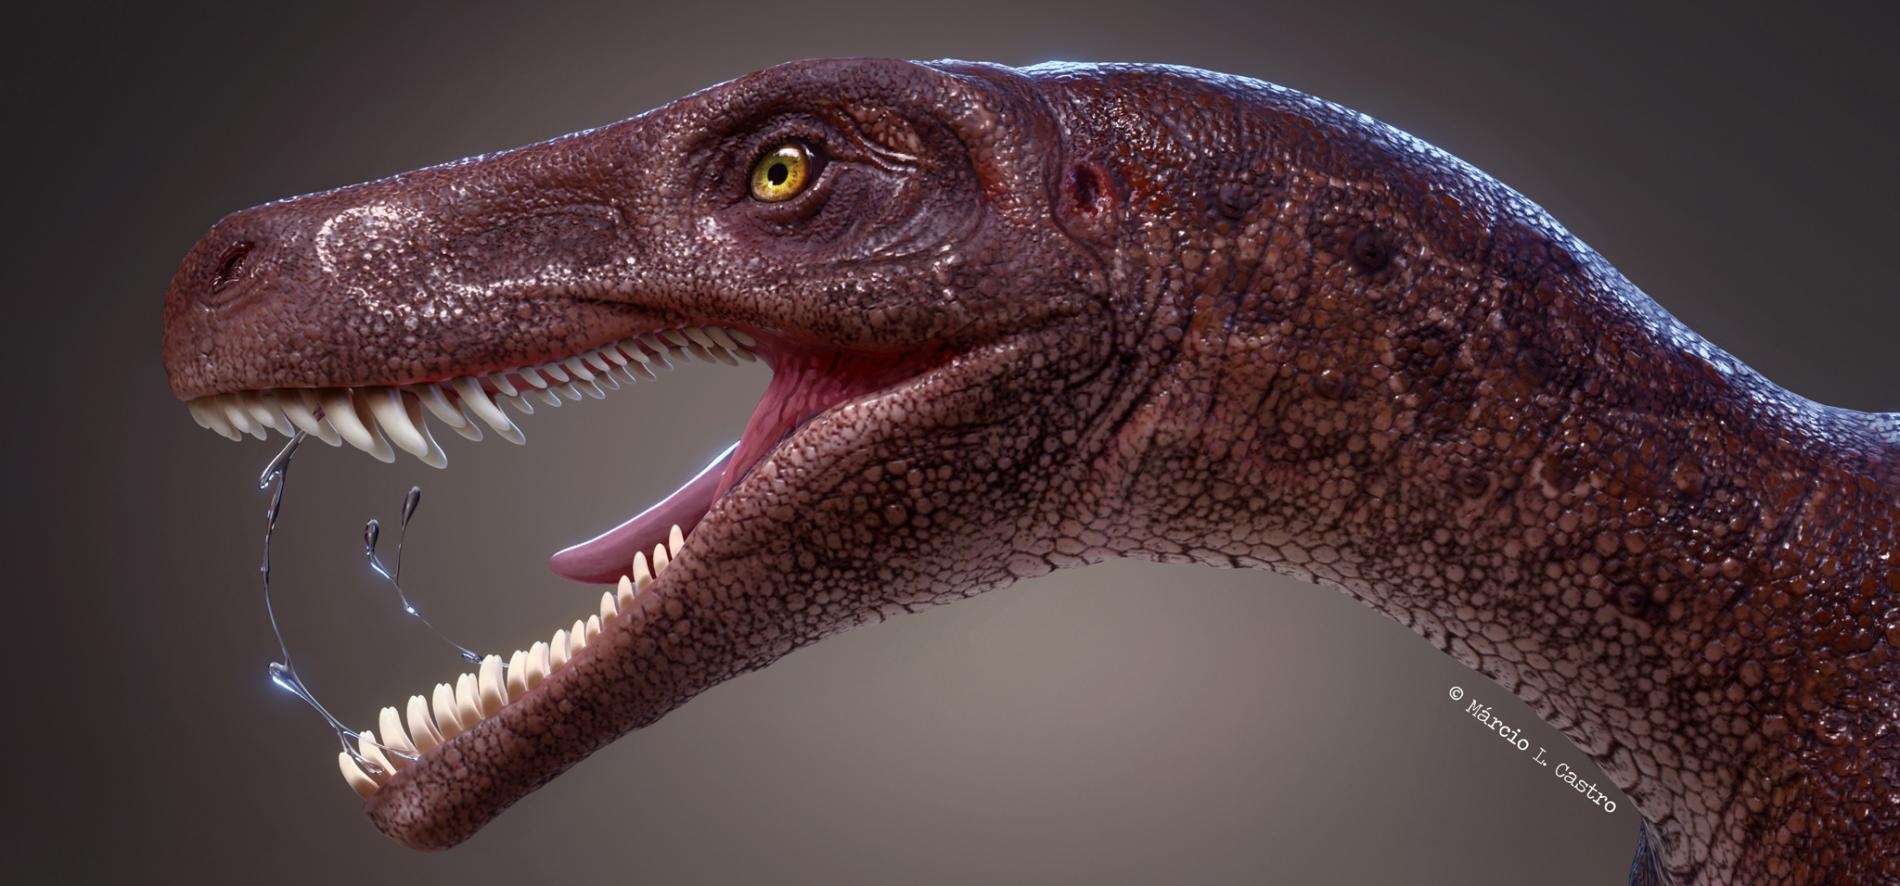 圖中的卡布雷拉噬頜龍（Gnathovorax cabreirai）是巴西的同類肉食性恐龍裡最古老的物種，也是全世界最古老的恐龍之一。ILLUSTRATION BY MÁRCIO L. CASTRO